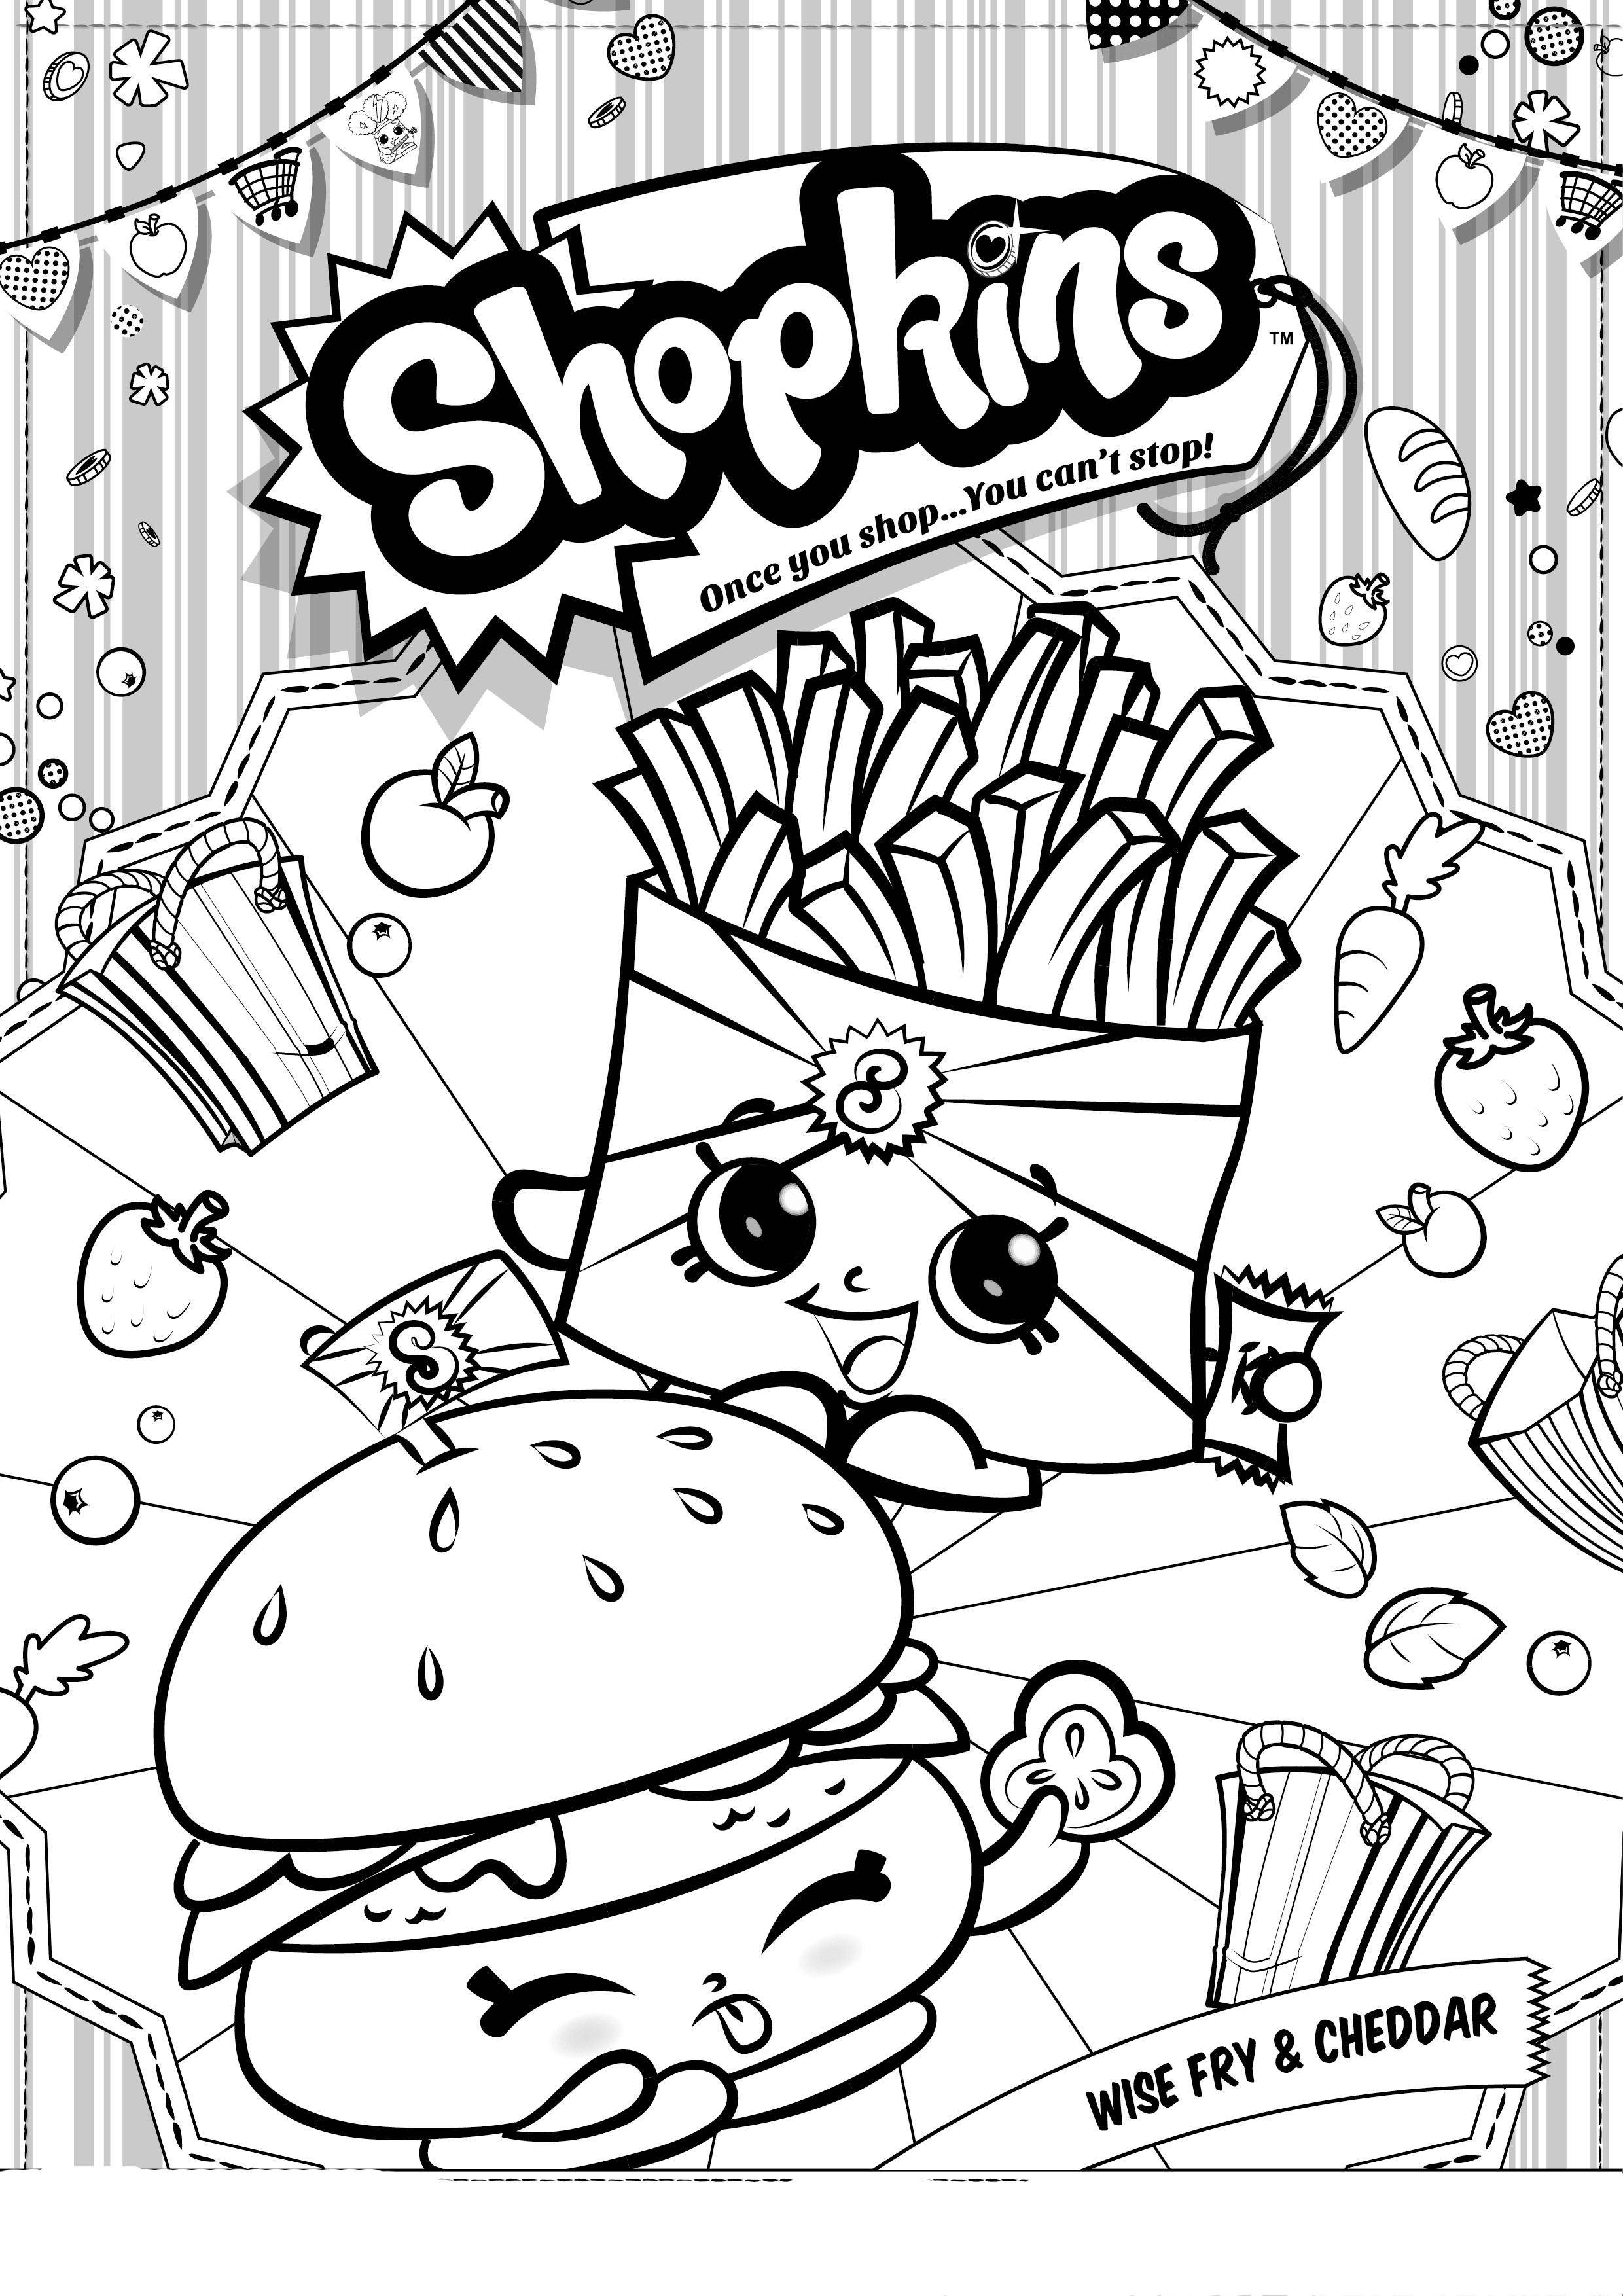 Опис: розмальовки  Гамбургер і картопля фрі. Категорія: Їжа. Теги:  їжа, гамбургер, картопля фрі.